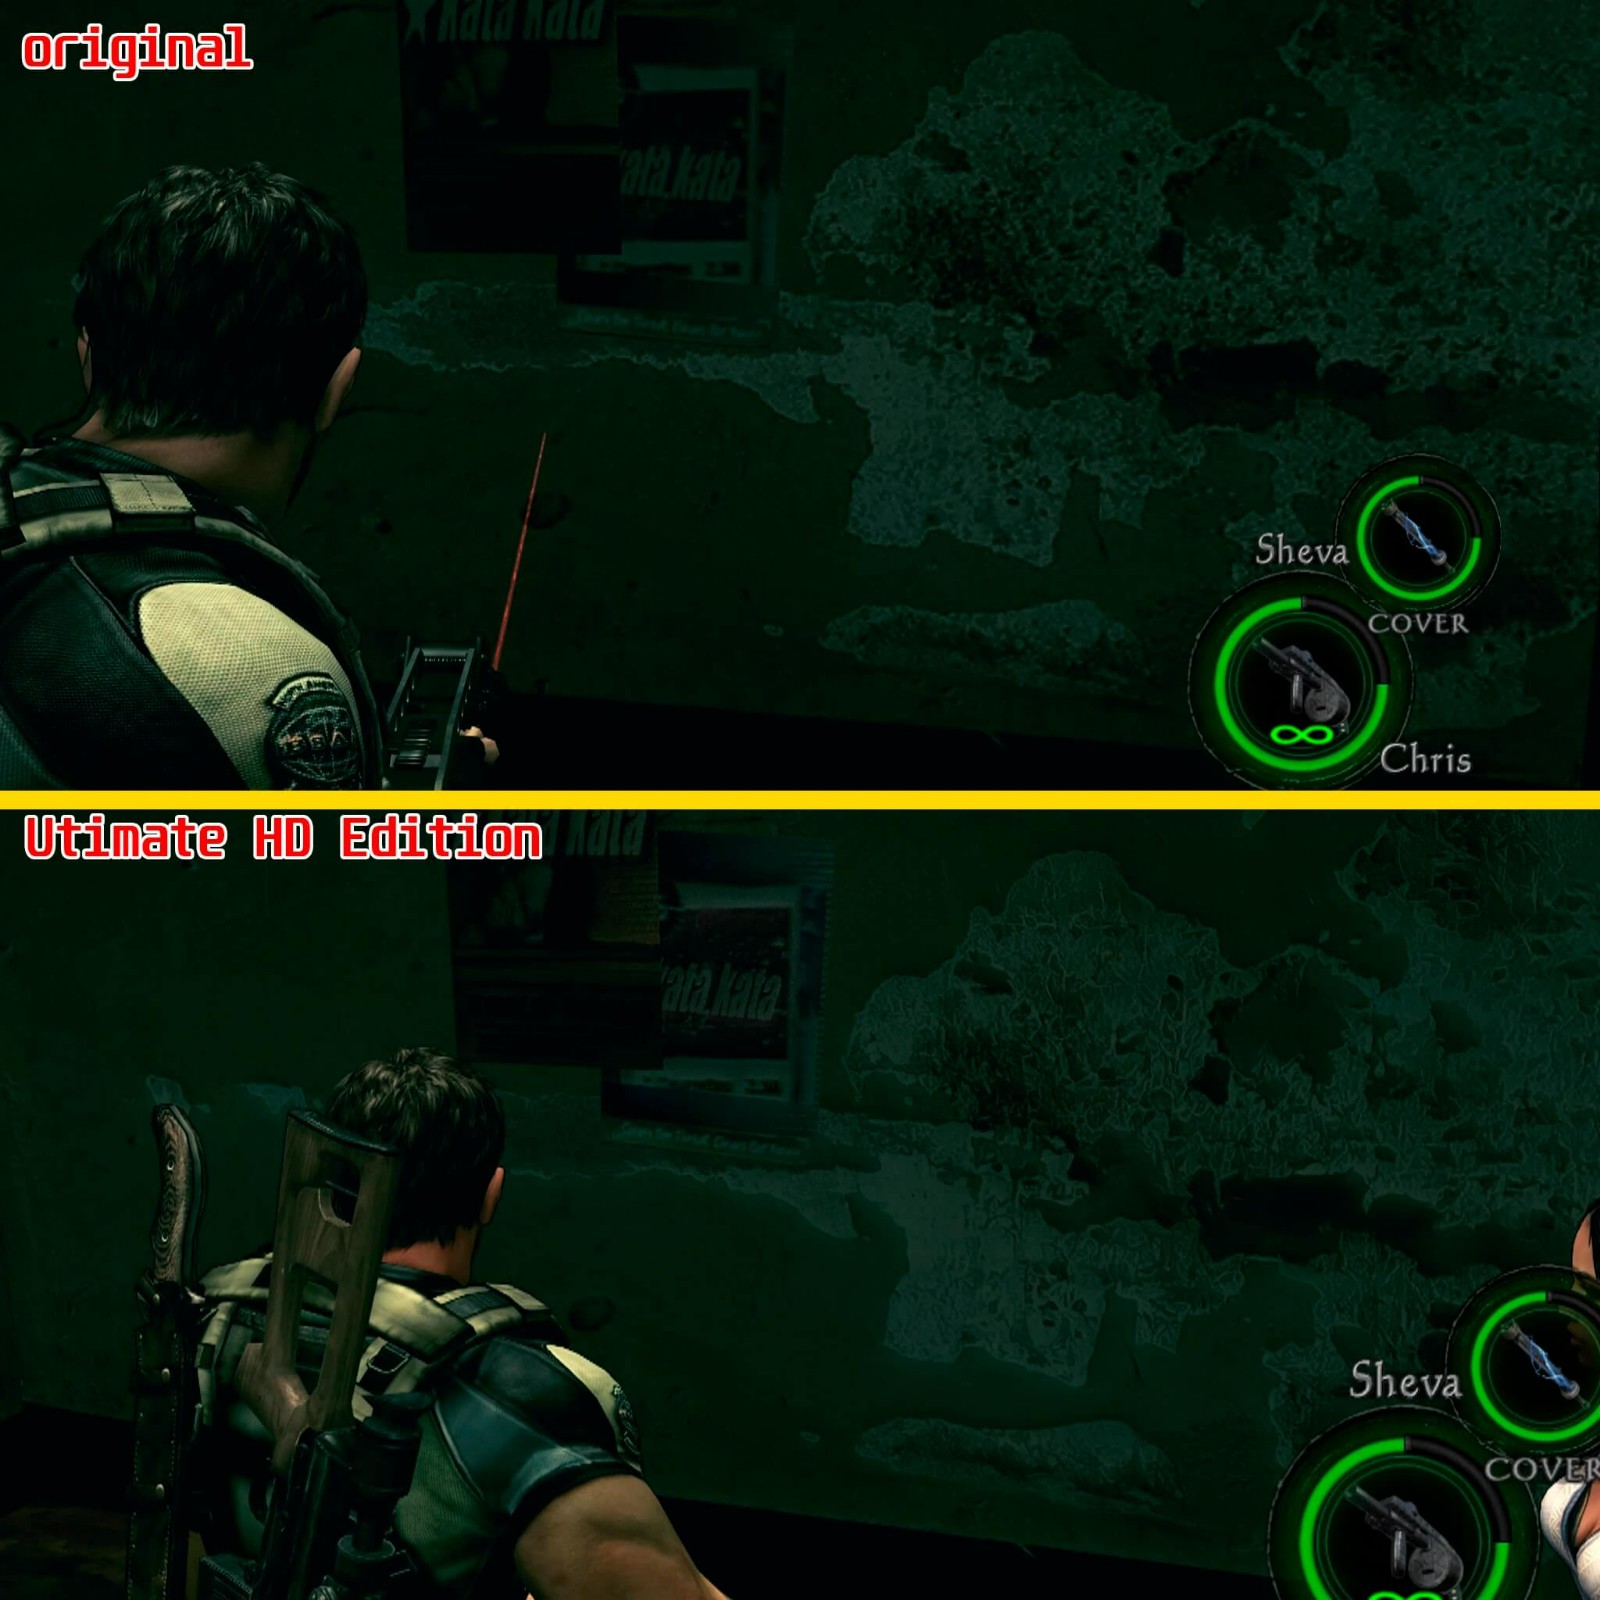 視覺效果升級 玩家自製《惡靈古堡5》高清MOD